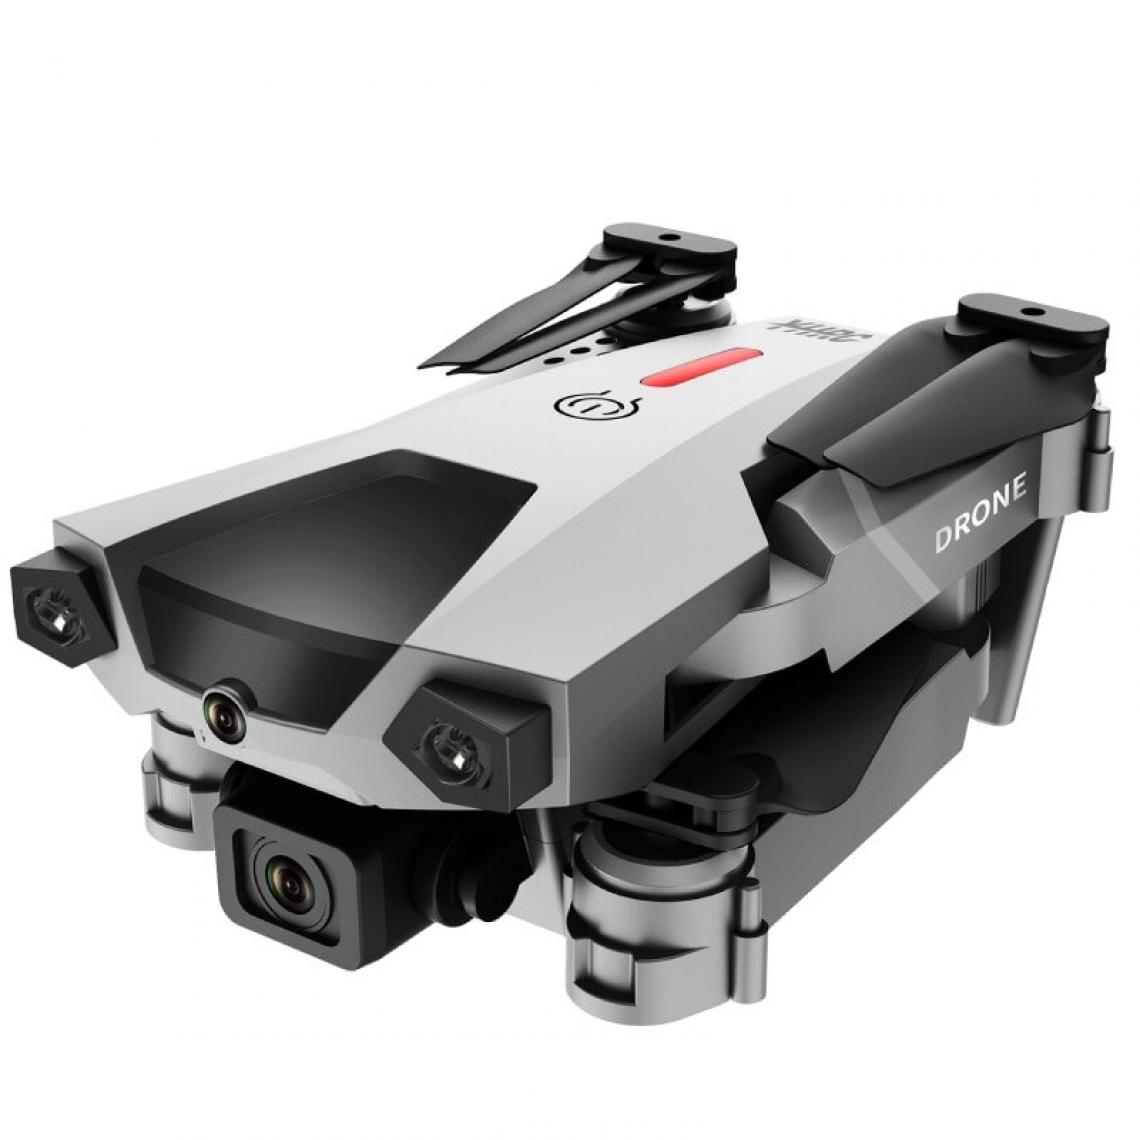 Universal - Le nouveau drone P5, 4K, double caméra, photographie aérienne professionnelle, quadricoptère d'évitement d'obstacles infrarouges, hélicoptère RC, jouet pour enfants.(Gris) - Hélicoptères RC